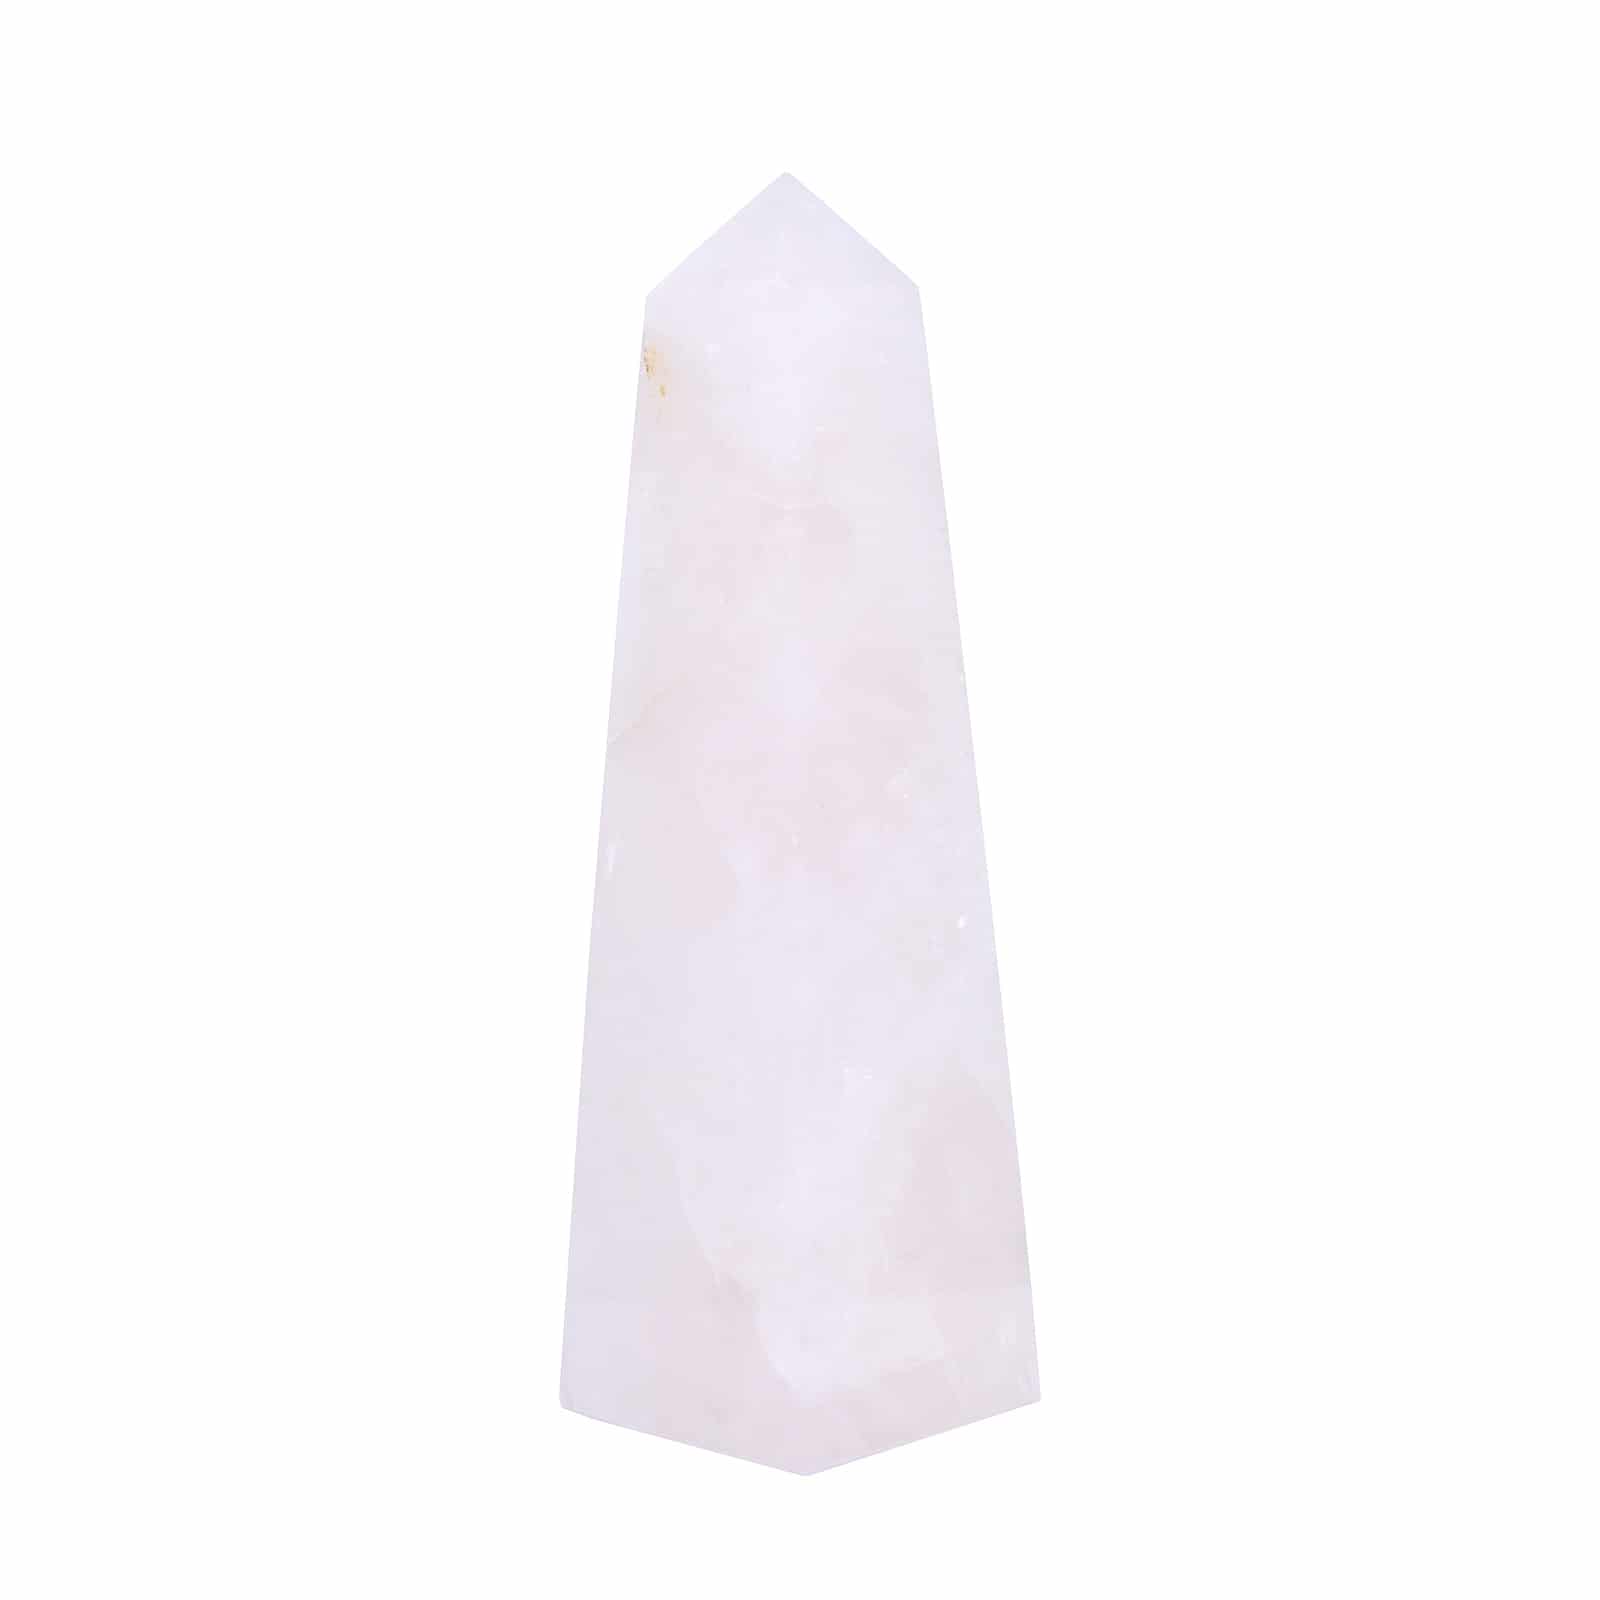 Οβελίσκος από ροζ Χαλαζία, ύψους 14,5cm. Αγοράστε online shop.